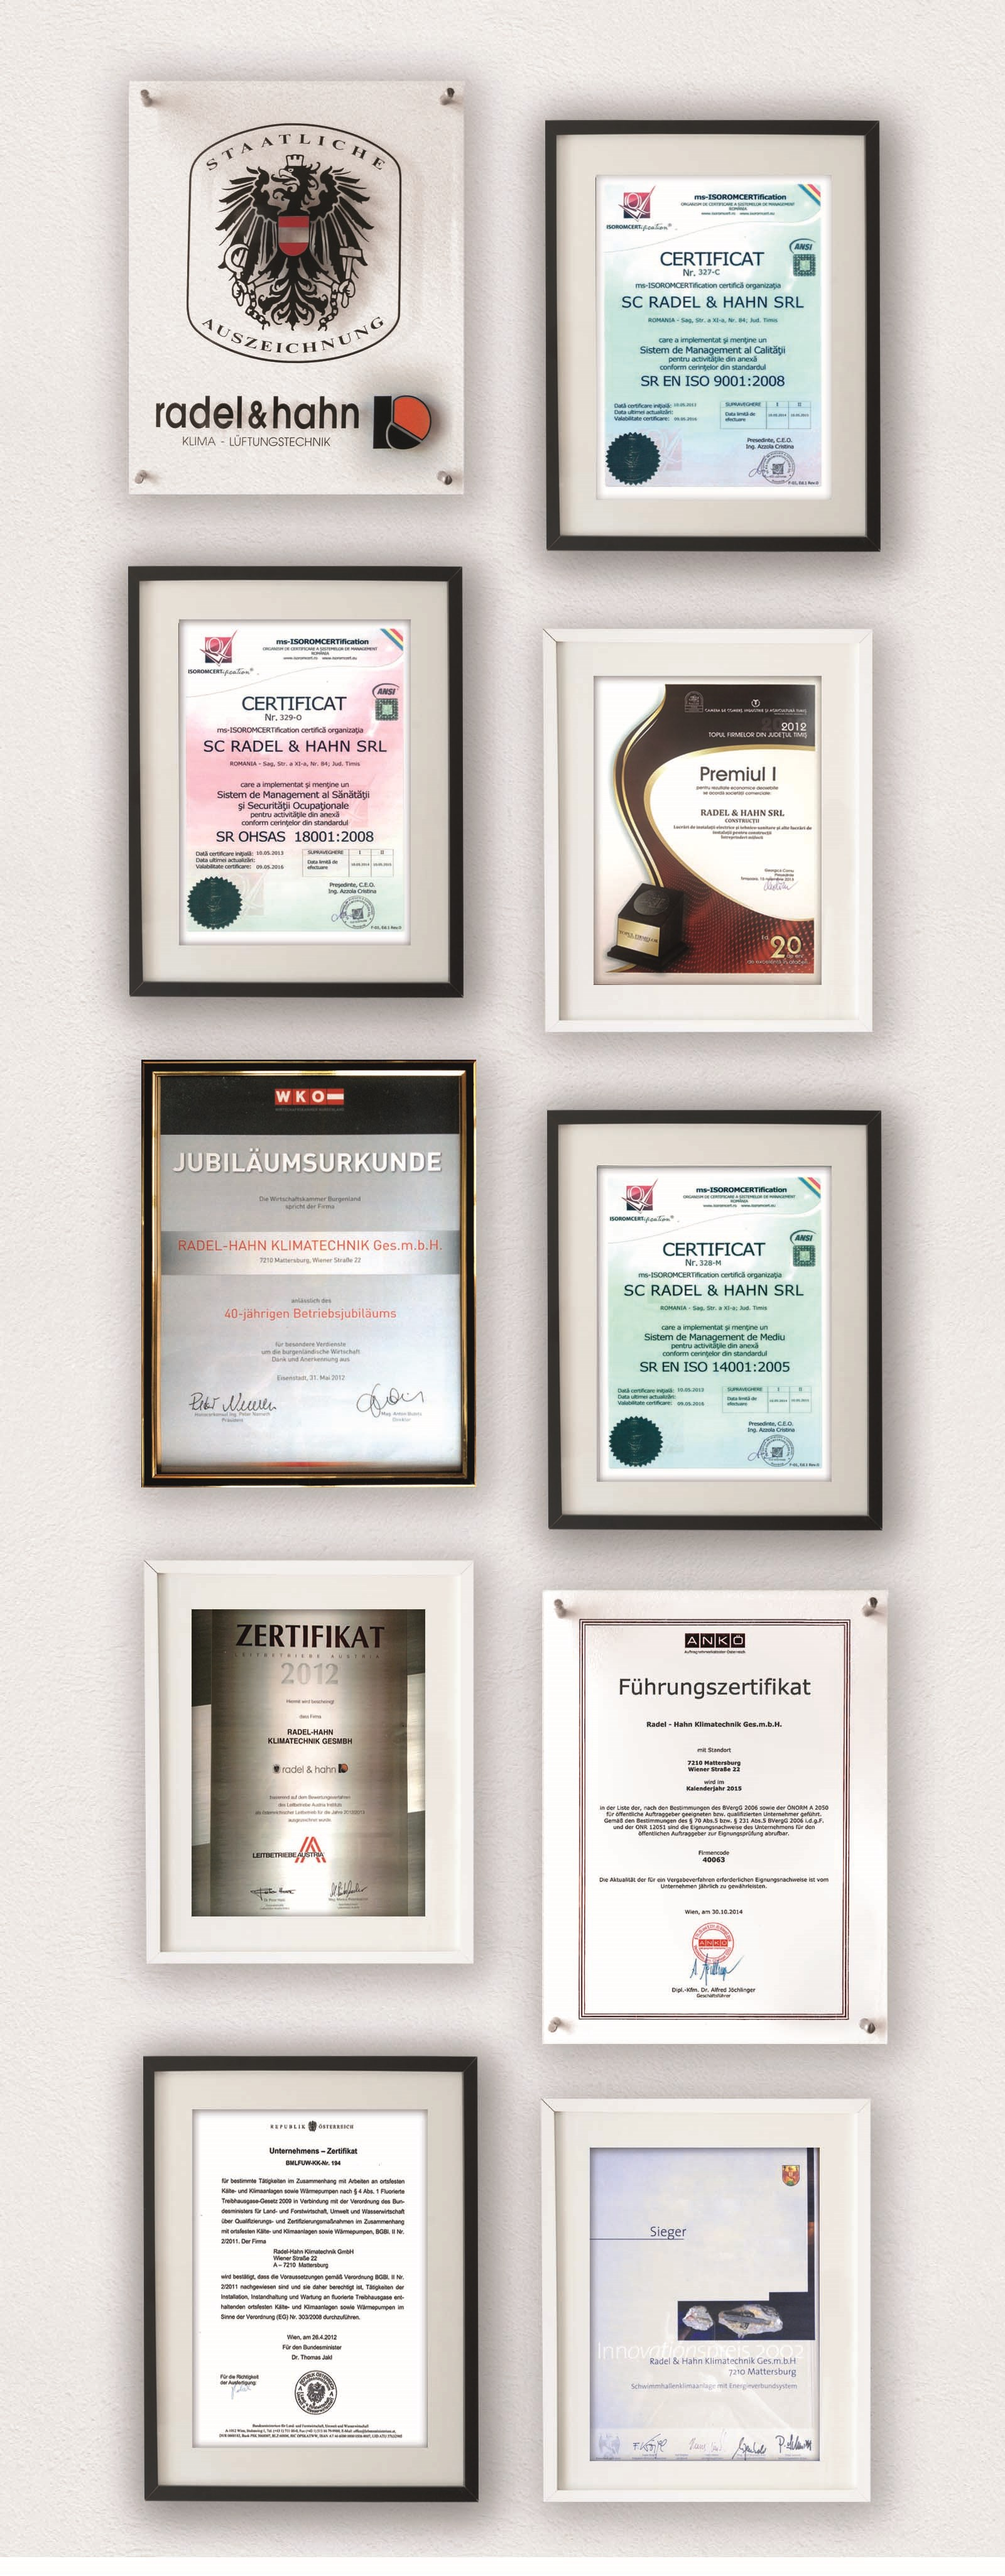 Staatswappen Österreich Die erfolgreichen Unternehmenstätigkeiten der führten 1997 zur Verleihung des Österreichischen Staatswappens Certification ISO 9001 Die zrt erhielt die ISO 9001 Qualifikation